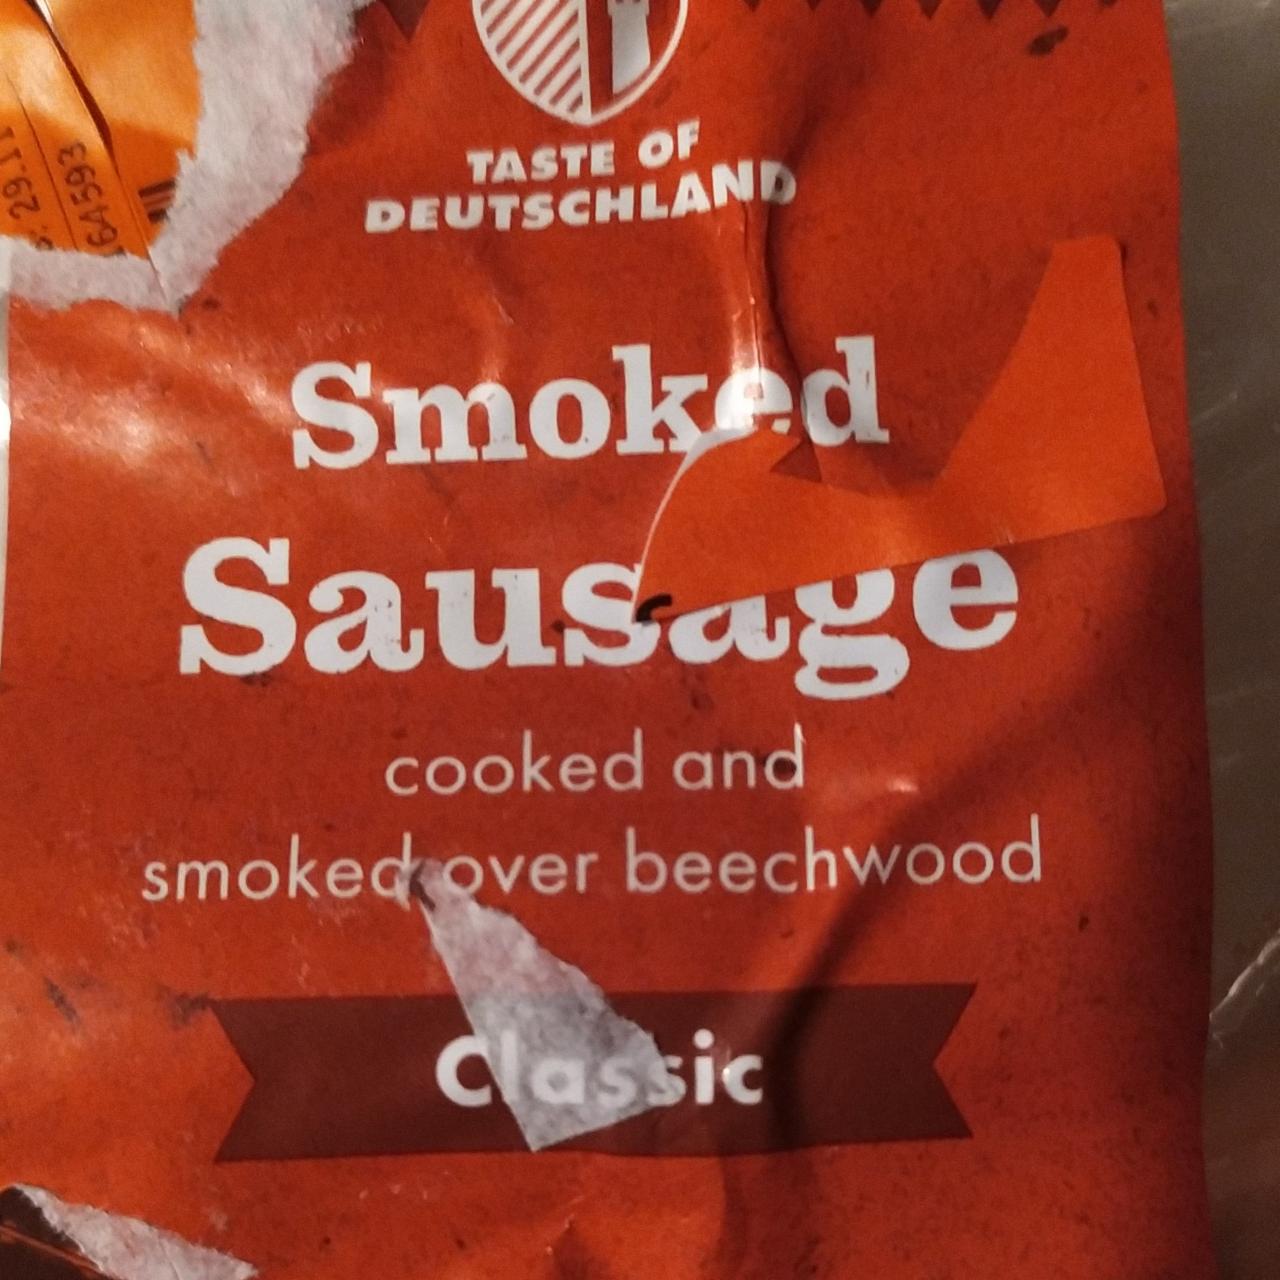 Fotografie - Smoked Sausage Classic Taste of Deutschland